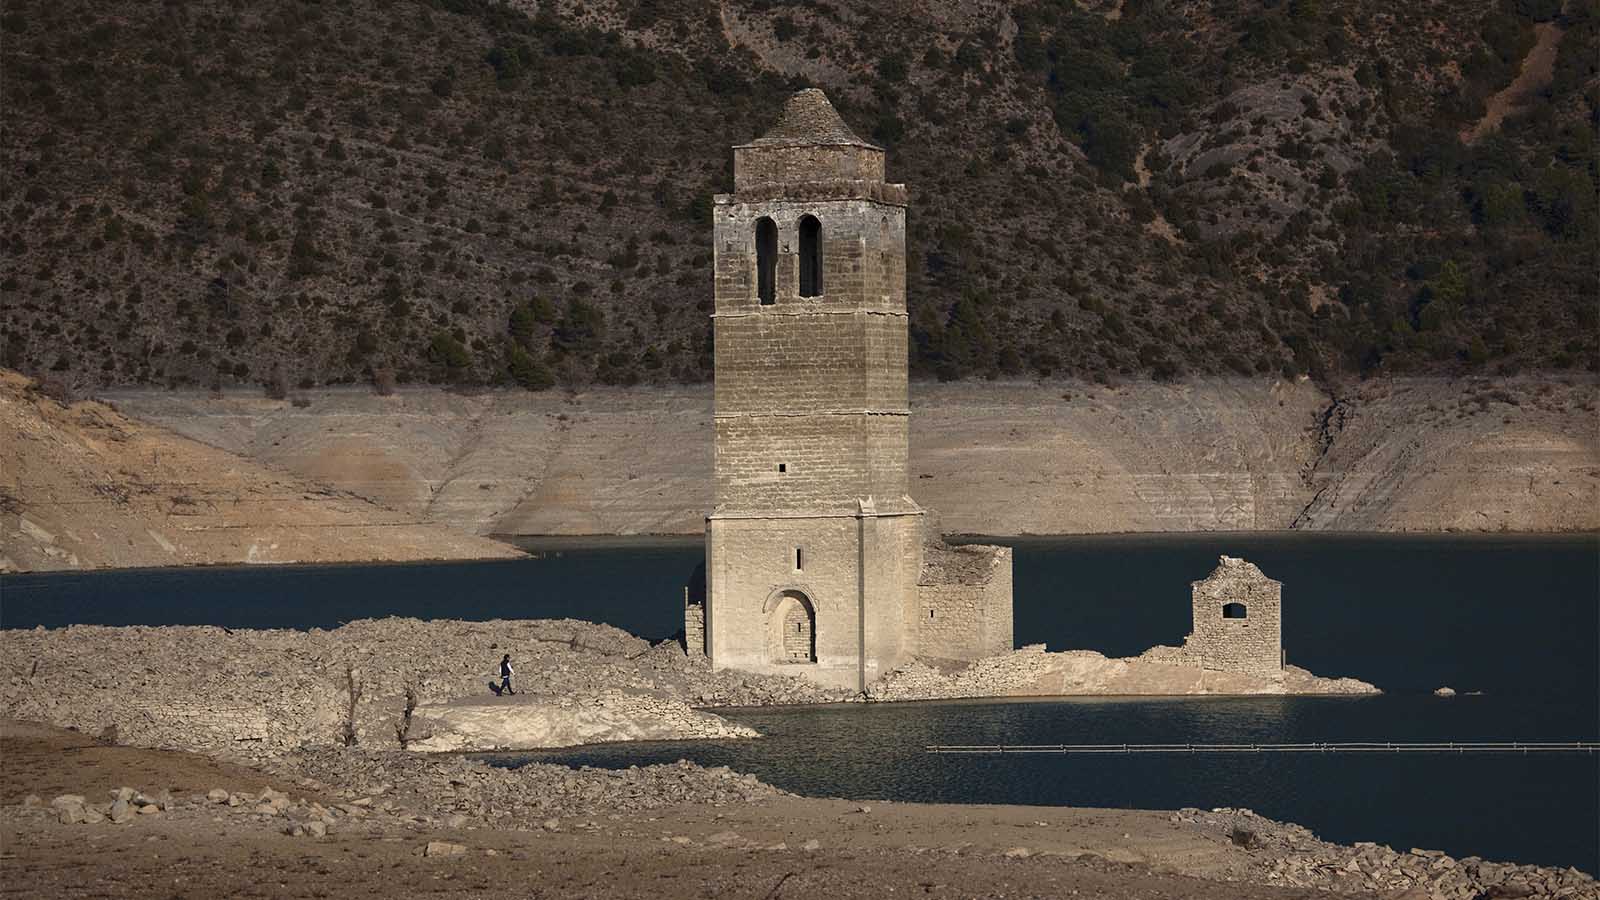 כנסייה עתיקה בספרד שנחשפה כאשר המים במאגר שהטביע את הכפר העתיק התייבש עקב הבצורת. (צילום ארכיון: AP Photo/Emilio Morenatti)